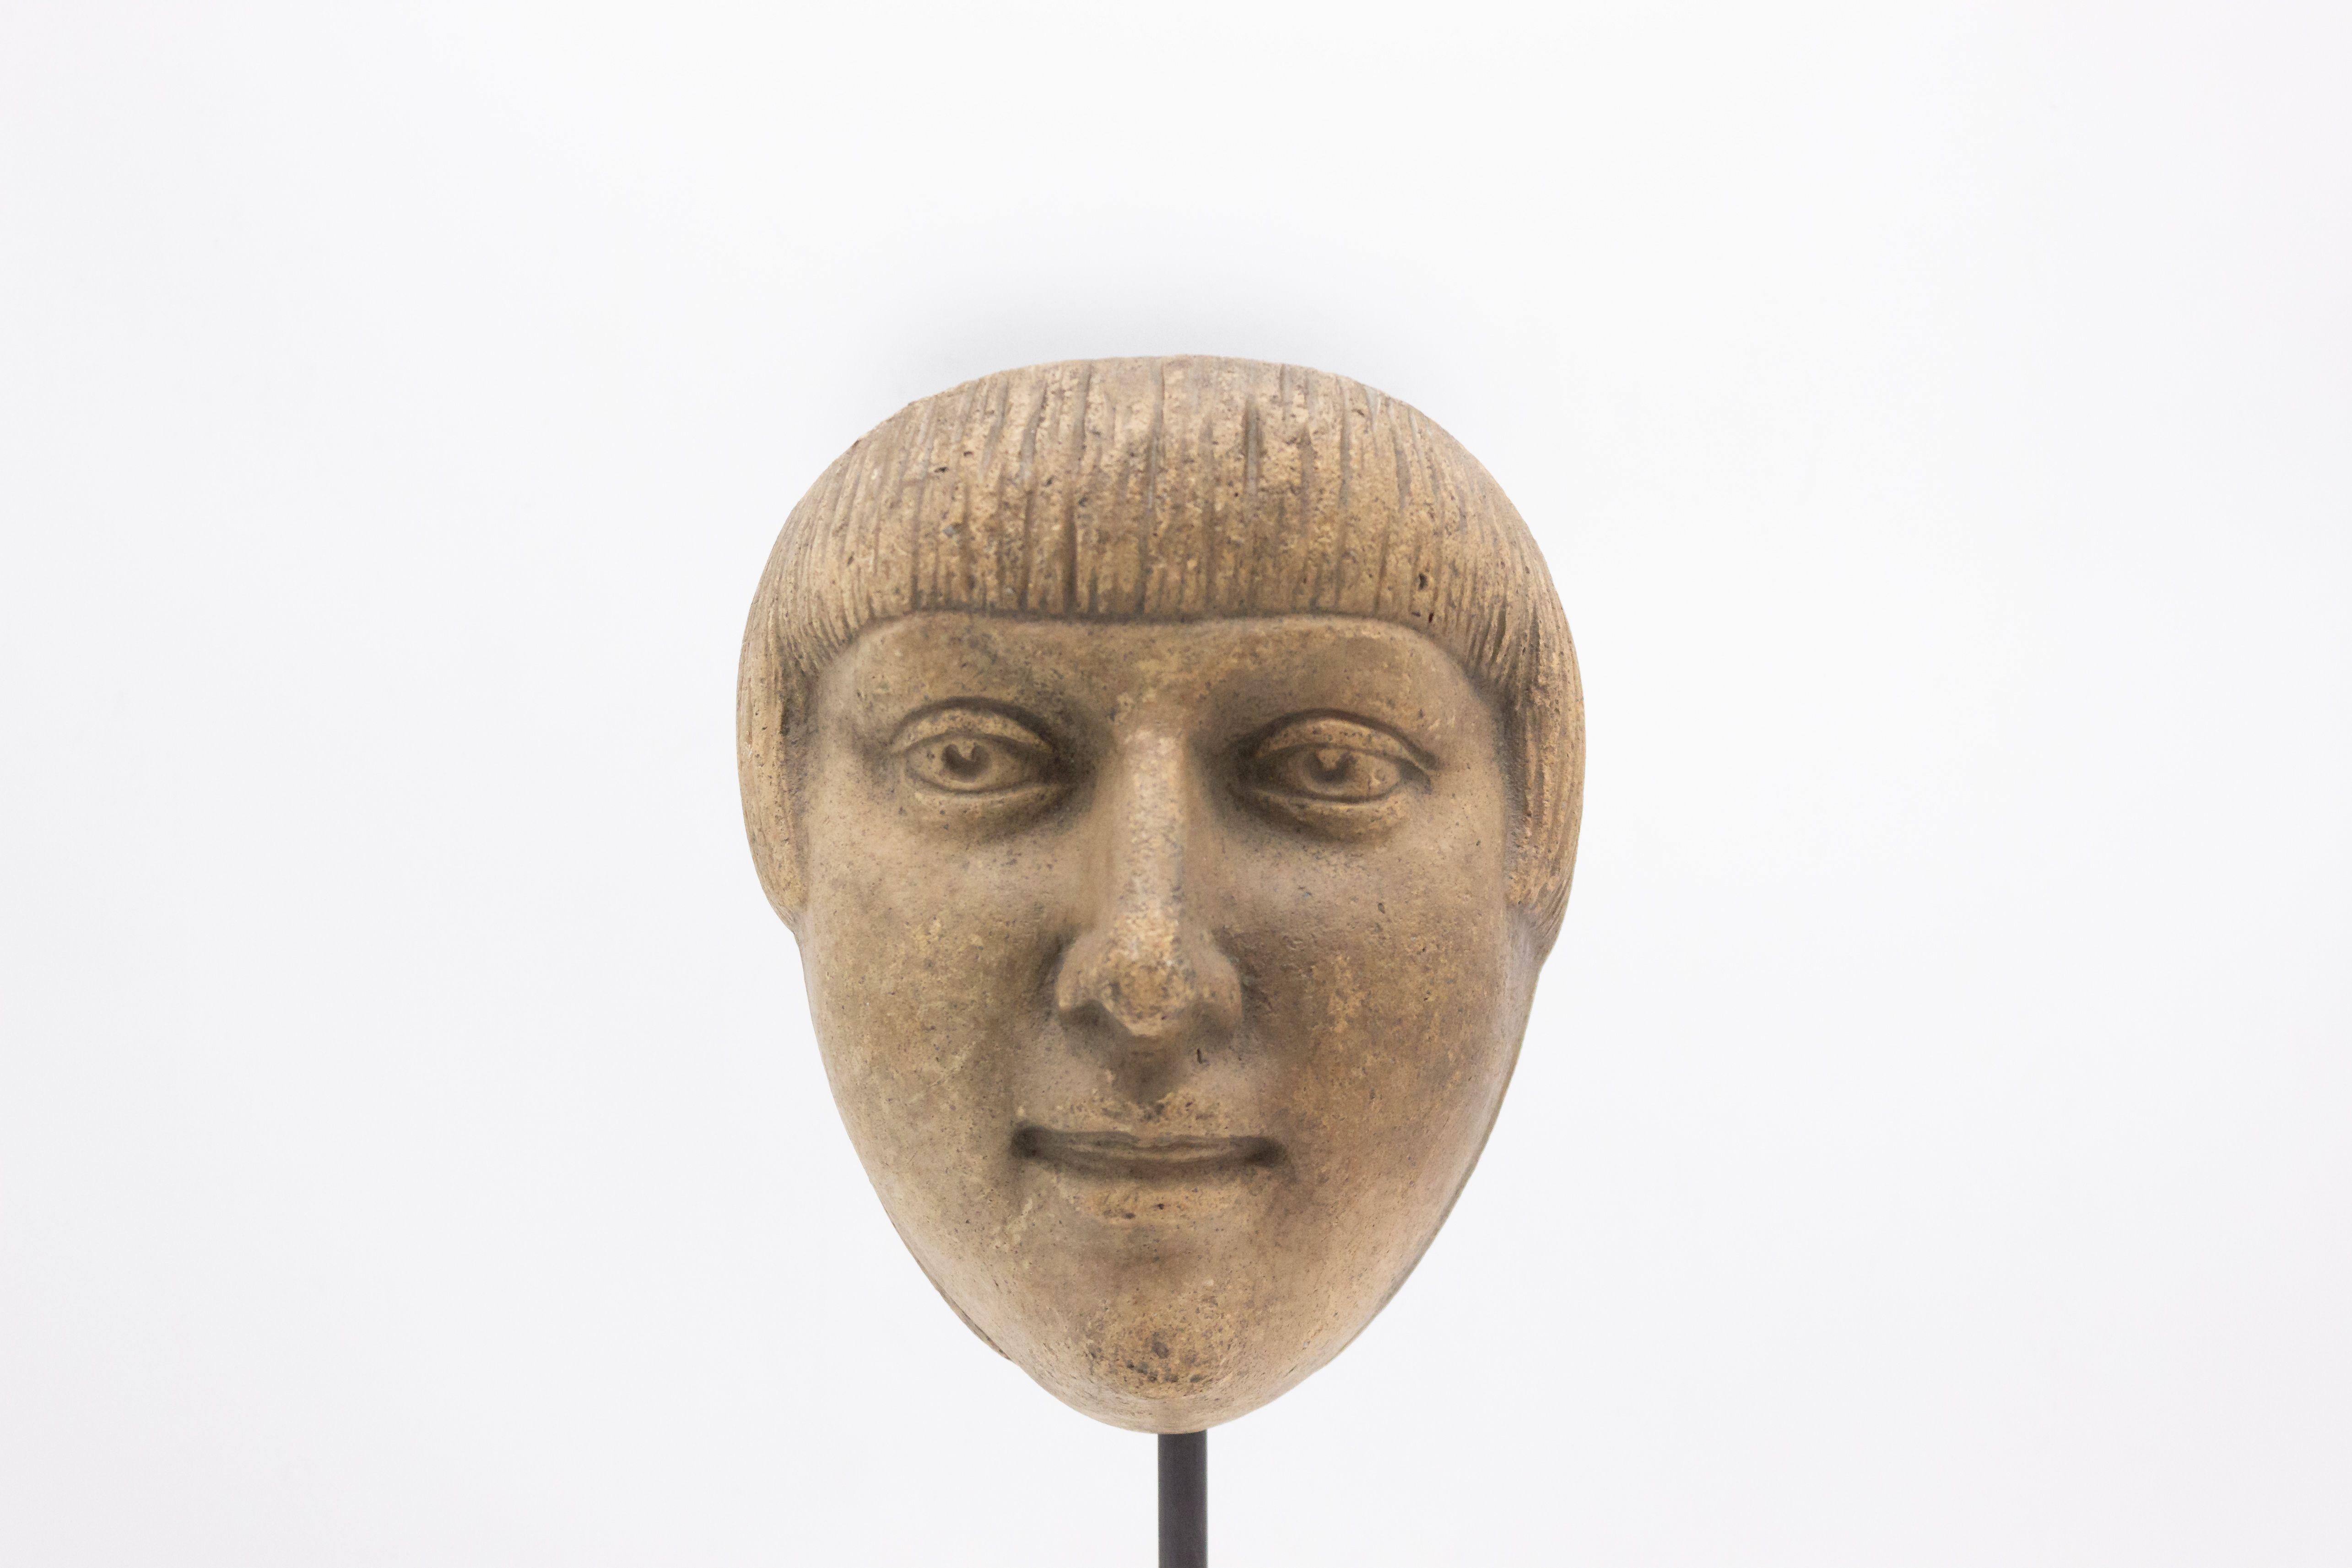 Moule de masque en terre cuite sculpté en Allemagne continentale (fin du 19e siècle) représentant un visage masculin souriant avec une coupe de cheveux de type 